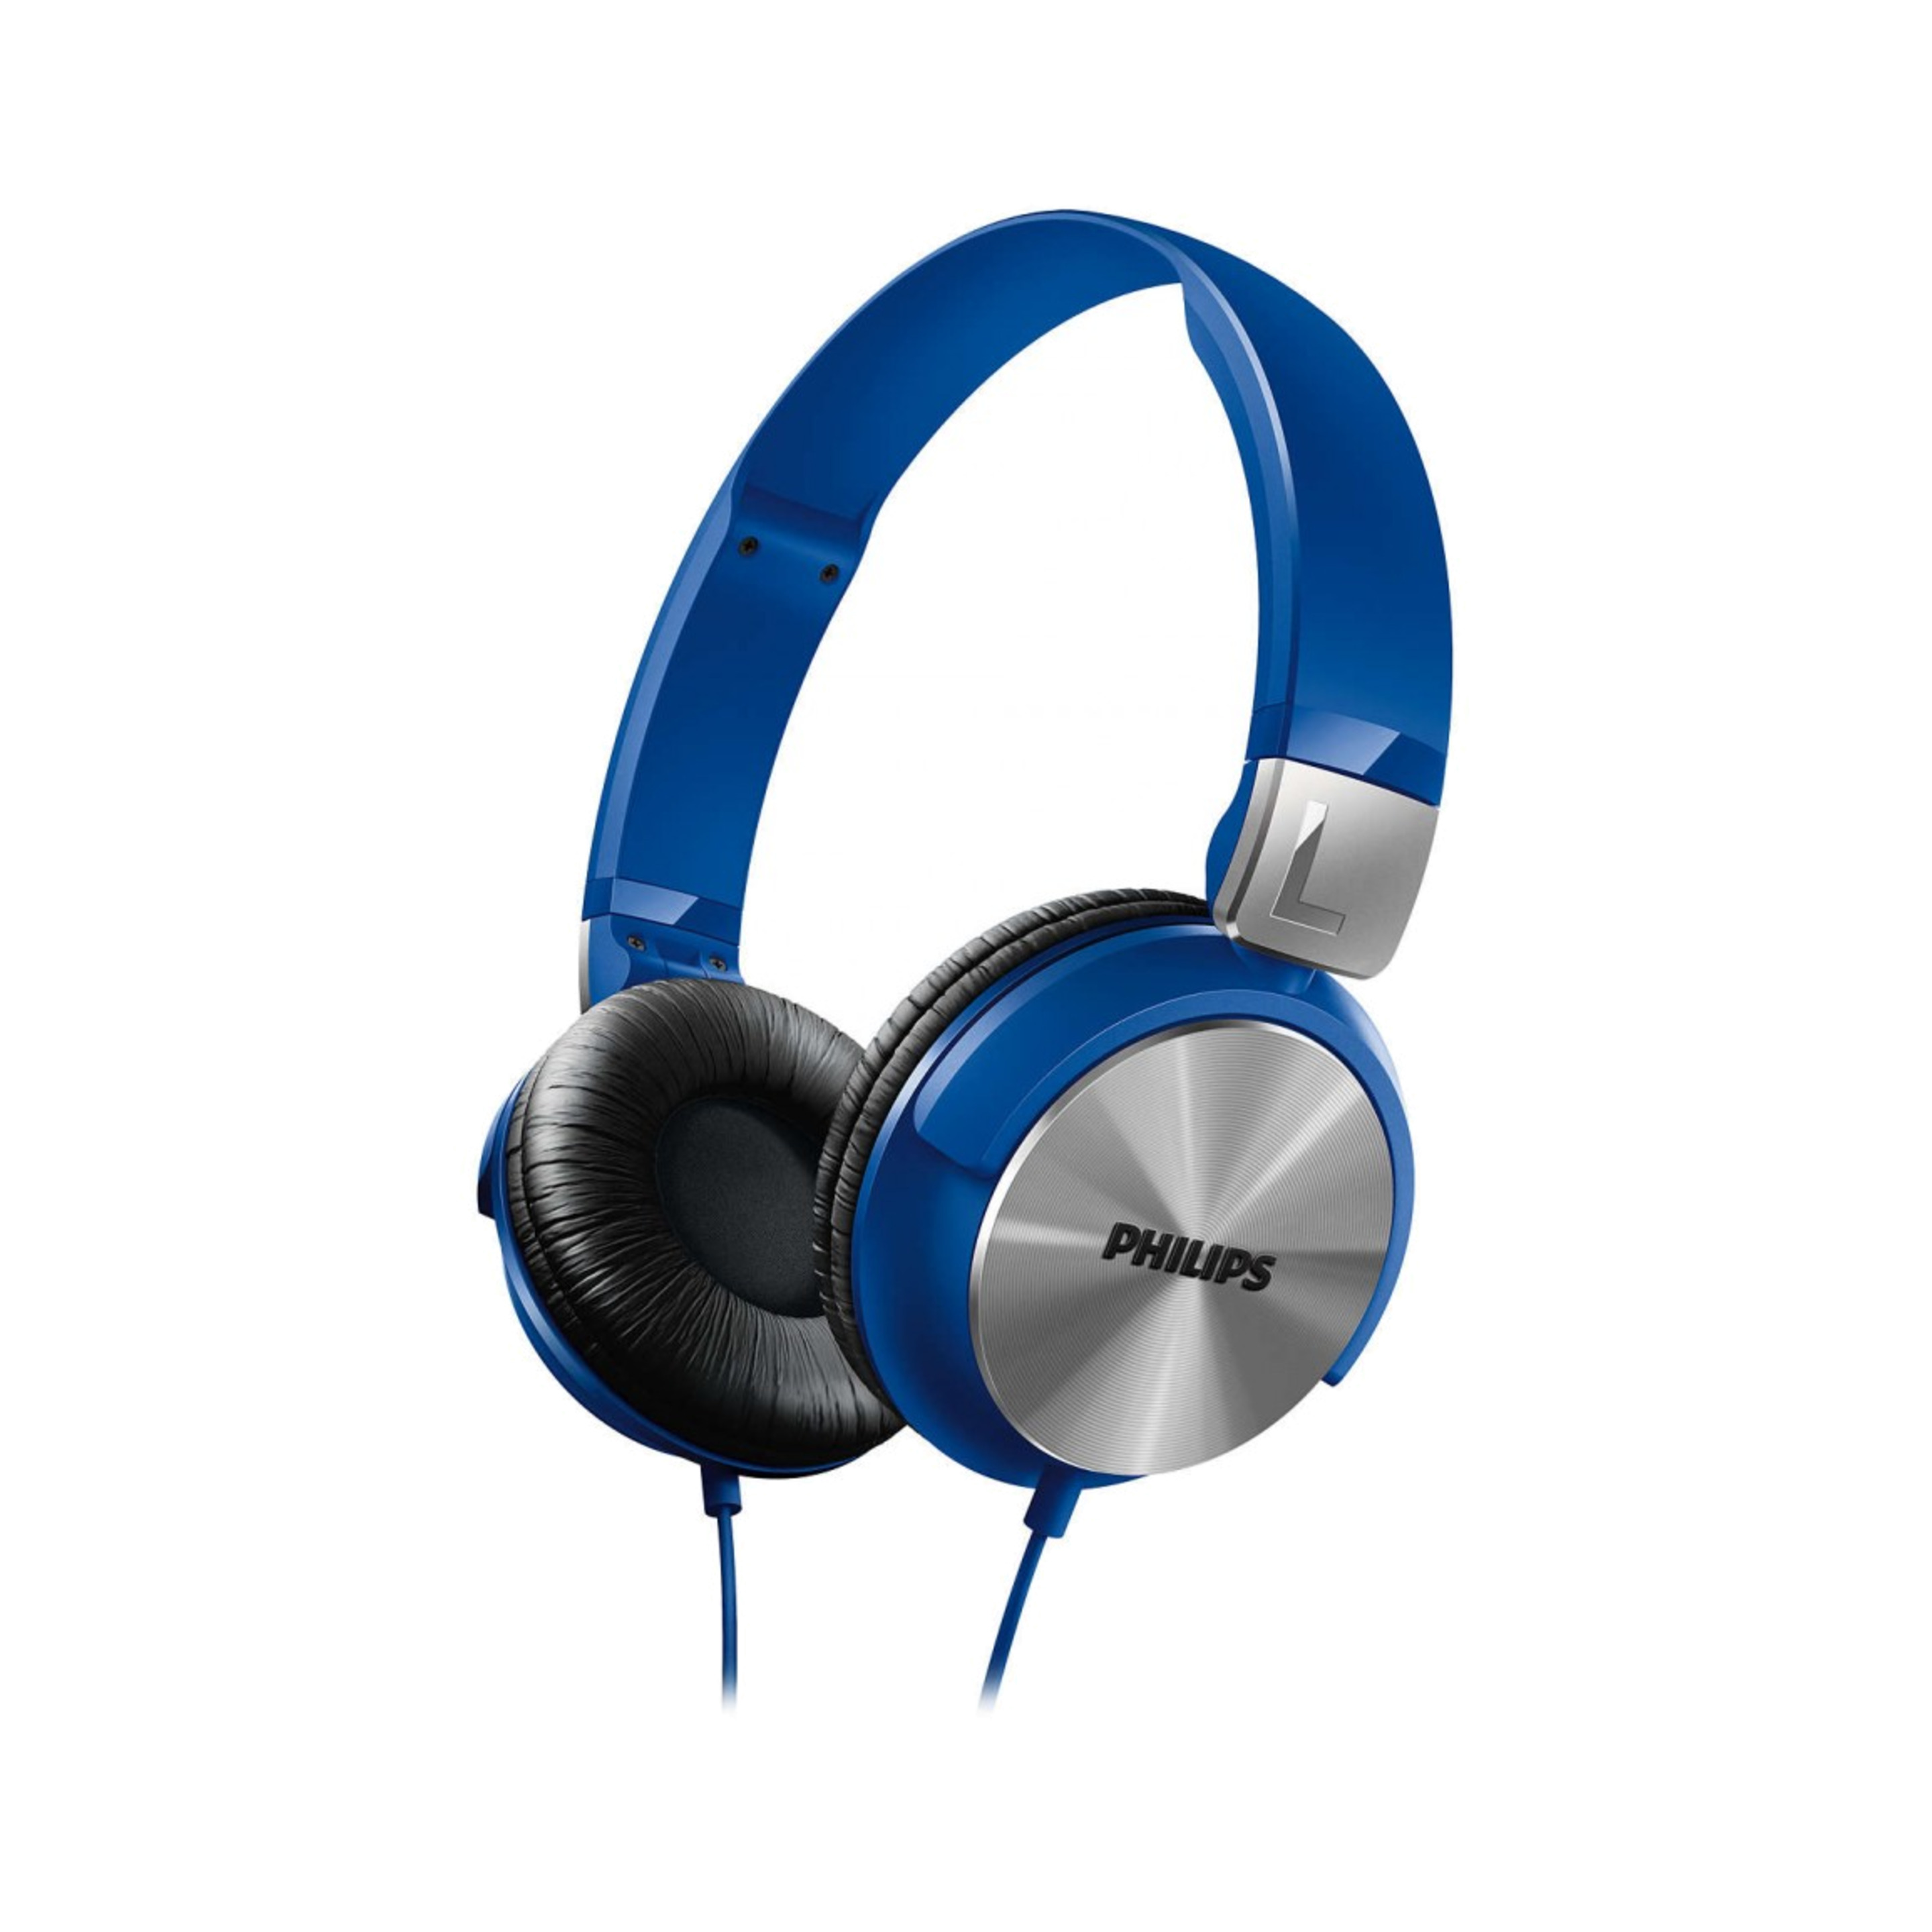 Philips Shl3160 Auriculares De Diadema Cerrados (Validos Para Android Y Iphone), Azul